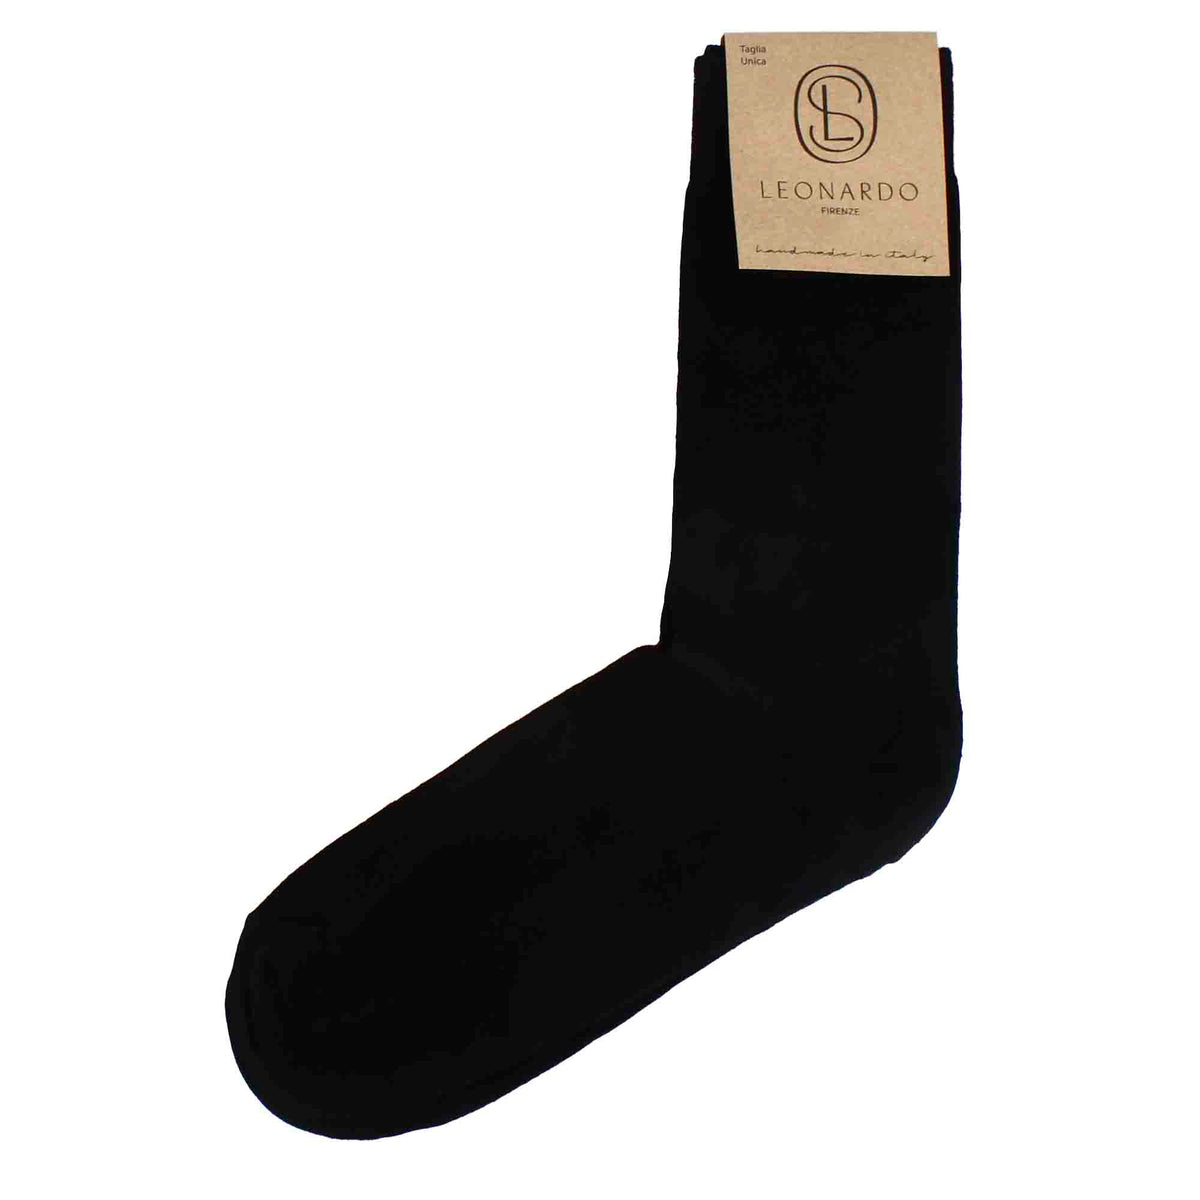 Men's plain black cotton socks